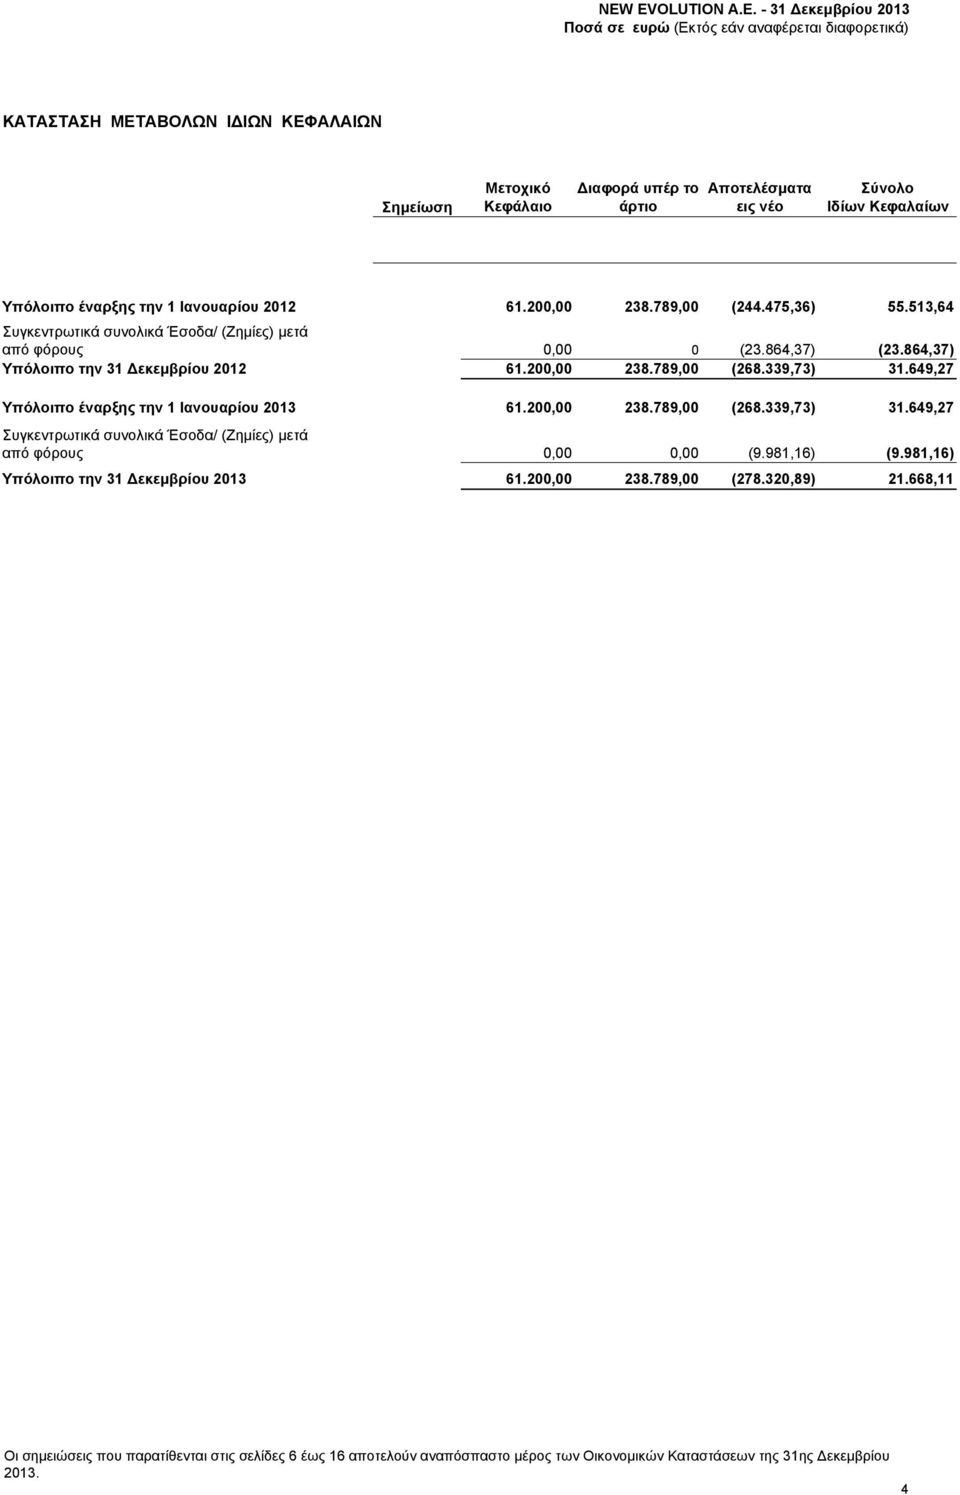 649,27 Υπόλοιπο έναρξης την 1 Ιανουαρίου 2013 61.200,00 238.789,00 (268.339,73) 31.649,27 Συγκεντρωτικά συνολικά Έσοδα/ (Ζημίες) μετά από φόρους 0,00 0,00 (9.981,16) (9.